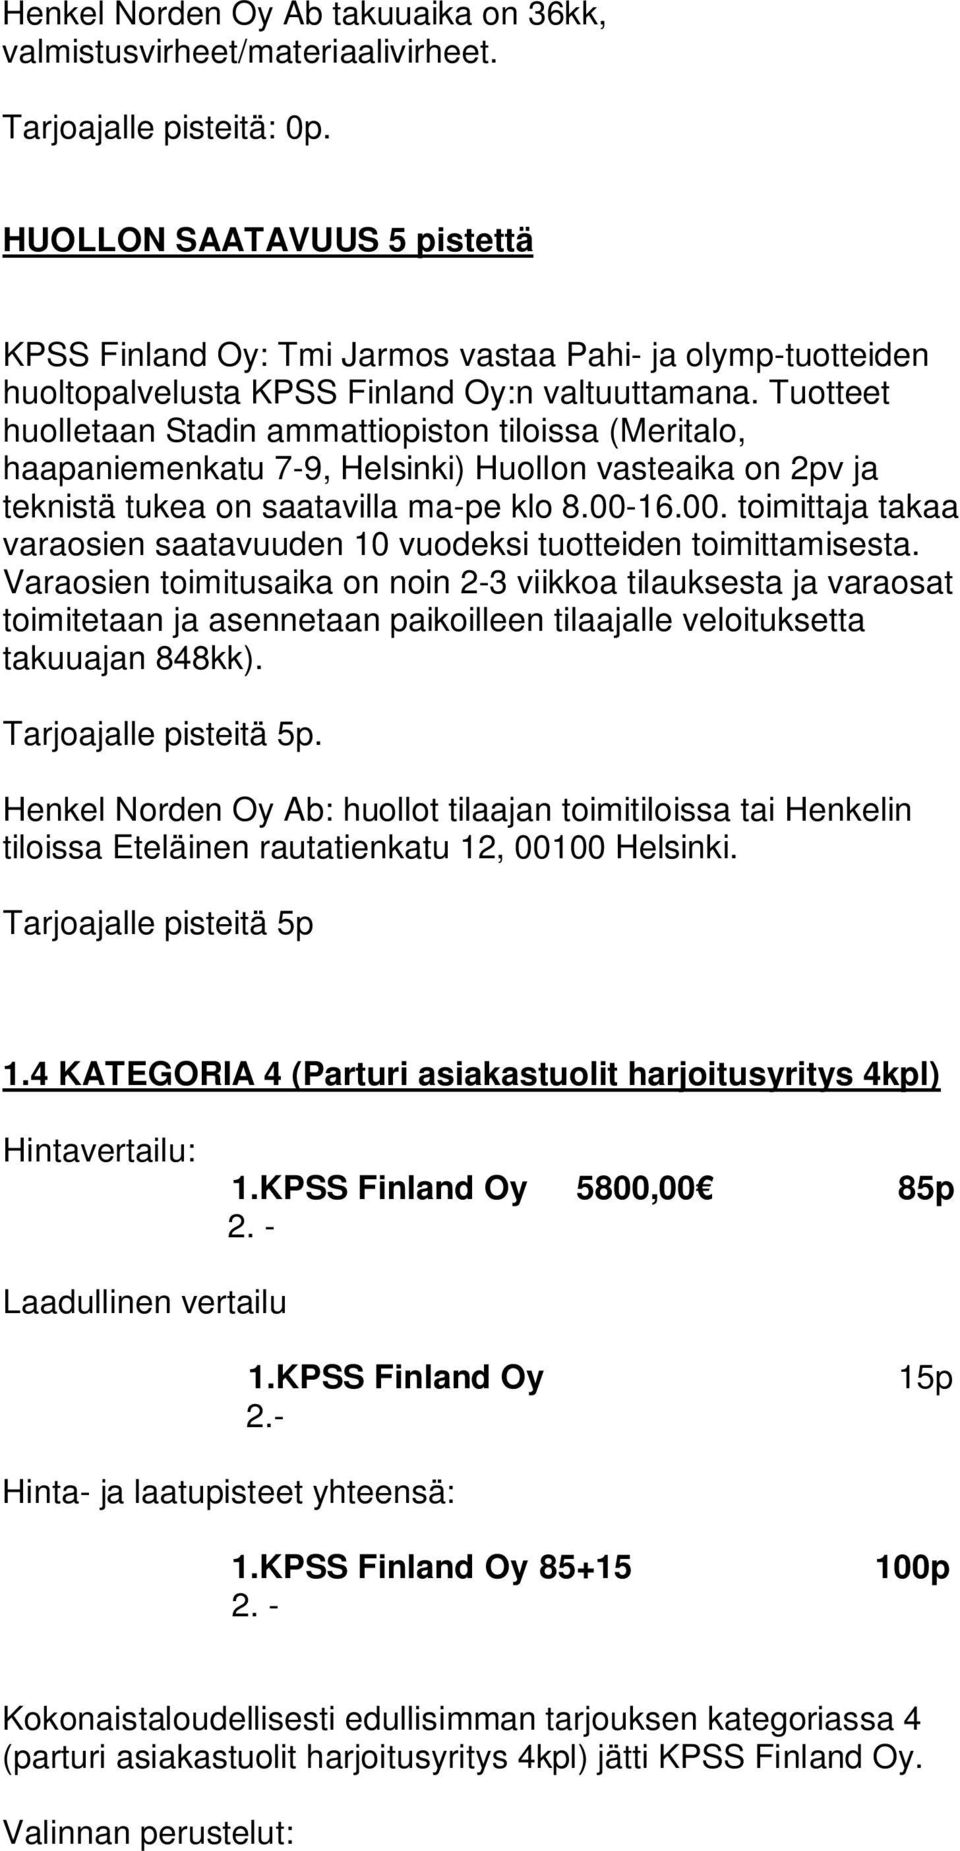 Tarjoajalle pisteitä 5p 1.4 KATEGORIA 4 (Parturi asiakastuolit harjoitusyritys 4kpl) 1.KPSS Finland Oy 5800,00 85p 1.